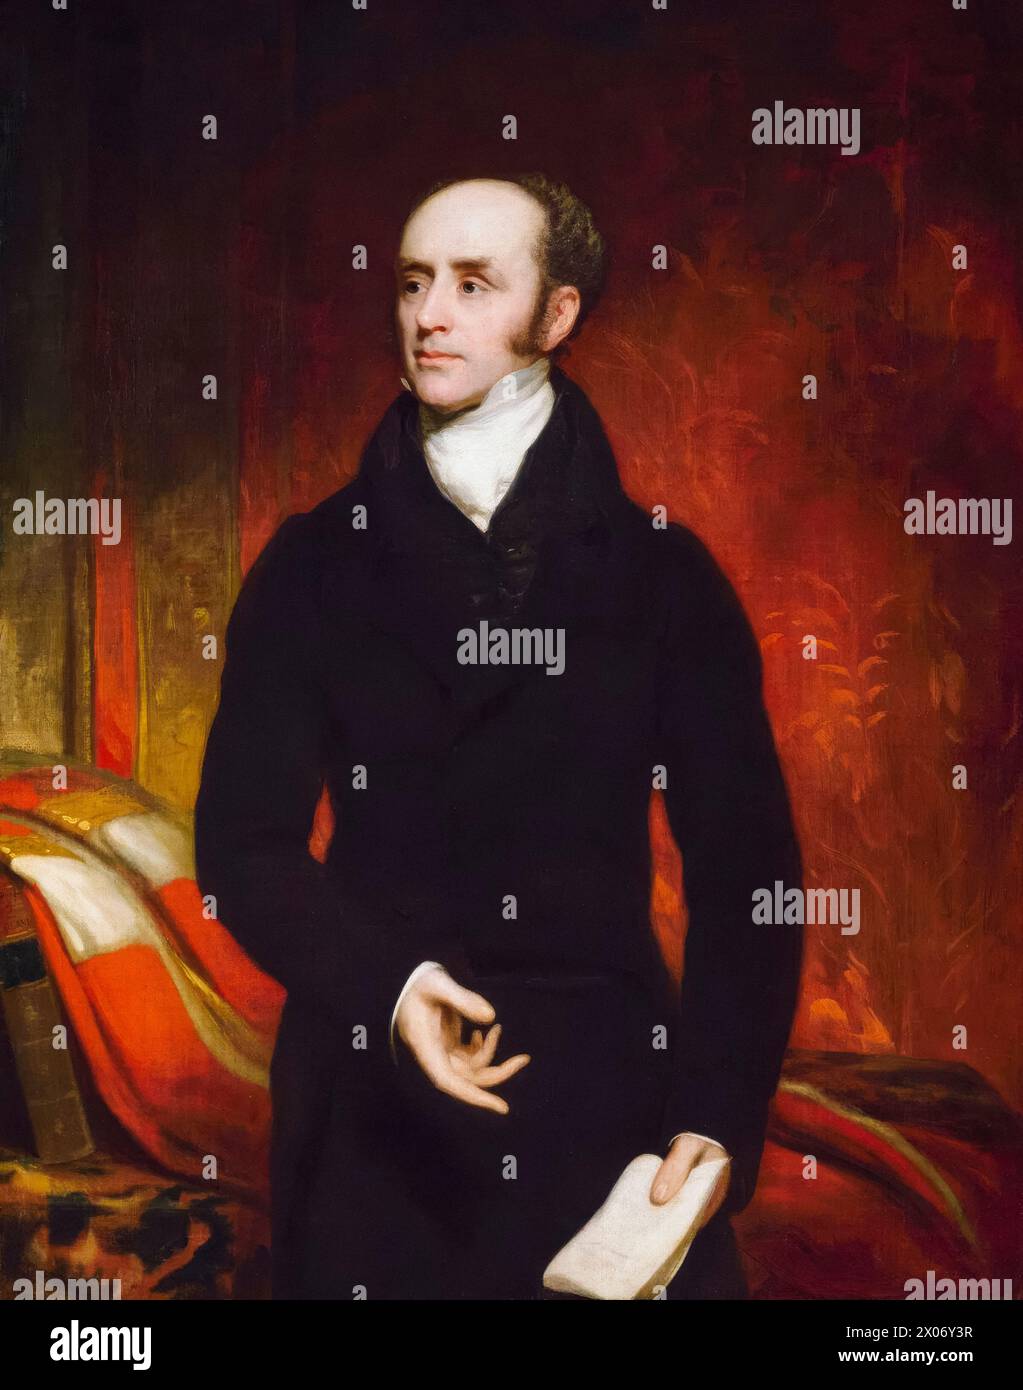 Charles Grey, 2. Earl Grey (1764–1845), bekannt als „Viscount Howick“, Whig-Politiker und Premierminister des Vereinigten Königreichs von 1830 bis 1834. Namensgeber von Earl Grey Tea, Porträtgemälde in Öl auf Leinwand von Thomas Phillips, um 1820 Stockfoto